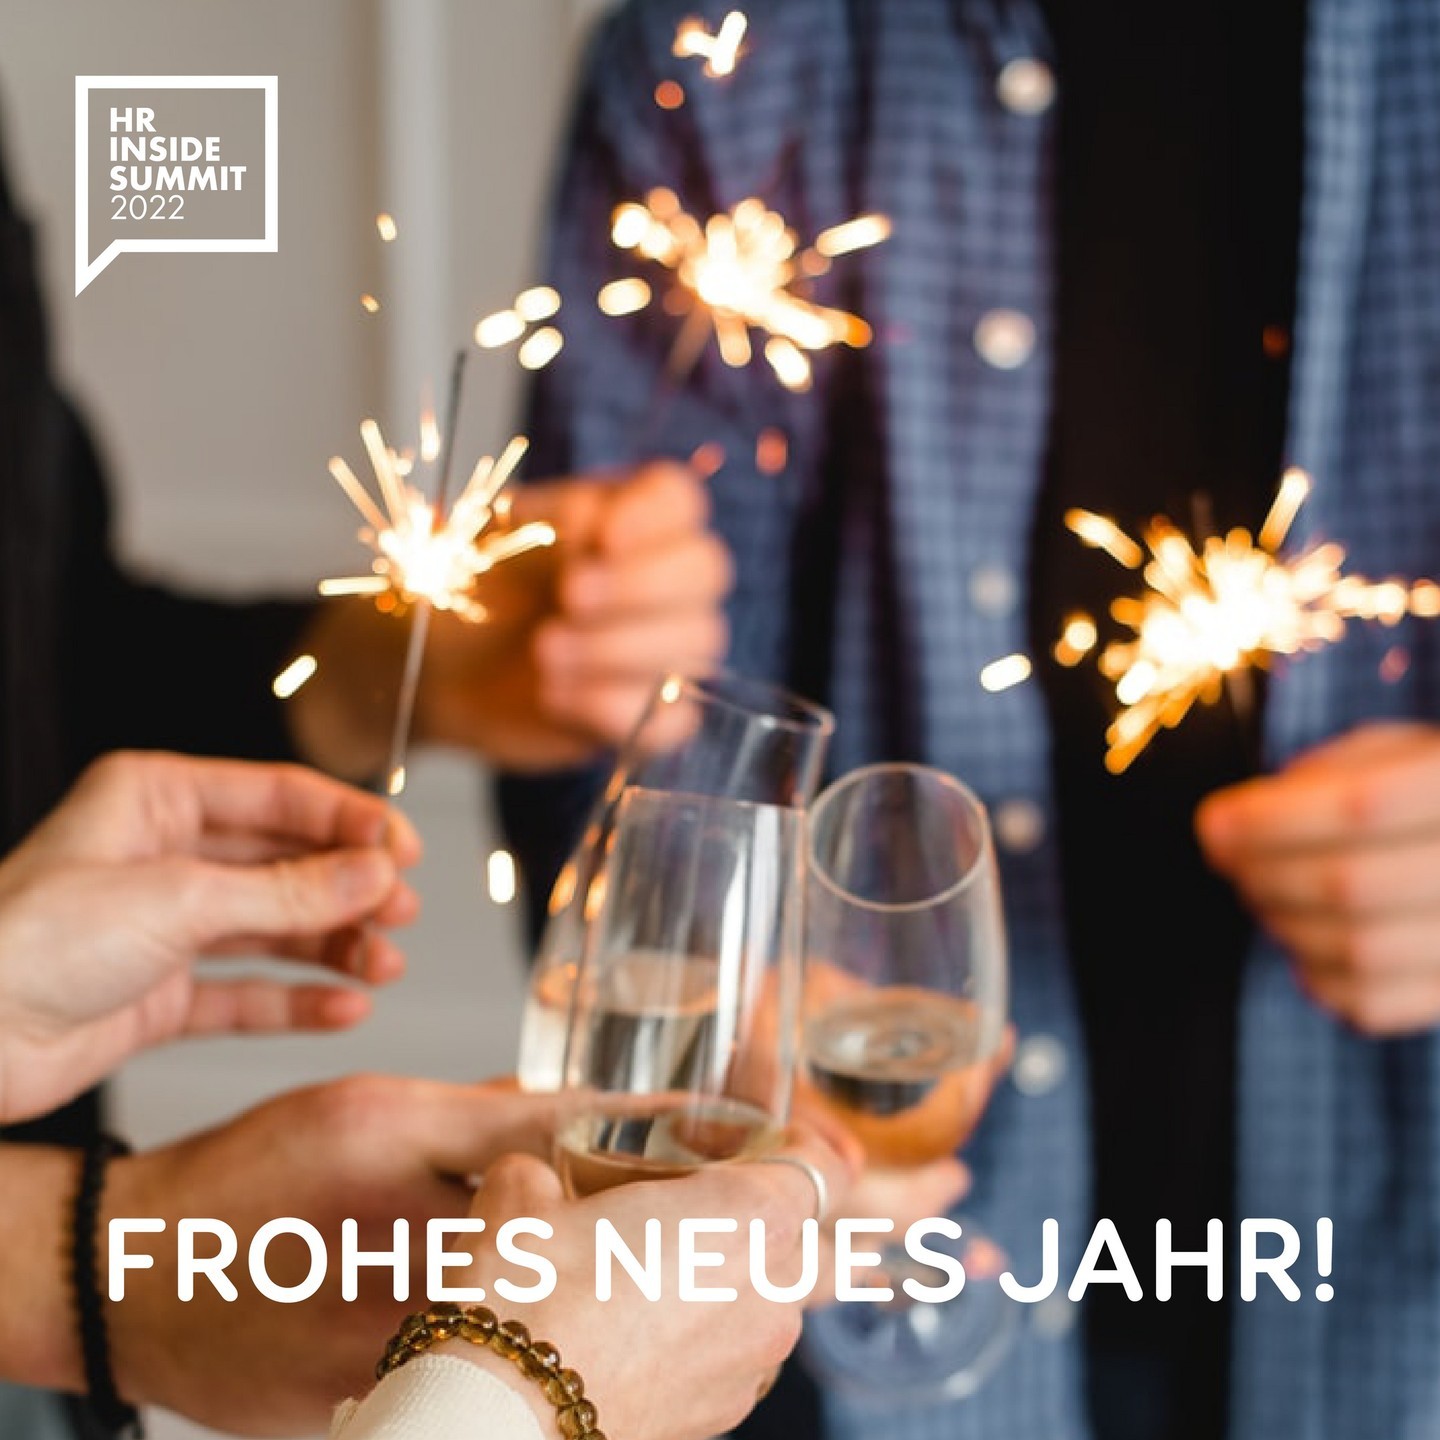 Happy New Year 🥂🎉

Wir wünschen ein schönes neues Jahr und freuen uns auf viele neue Events mit euch 🥰